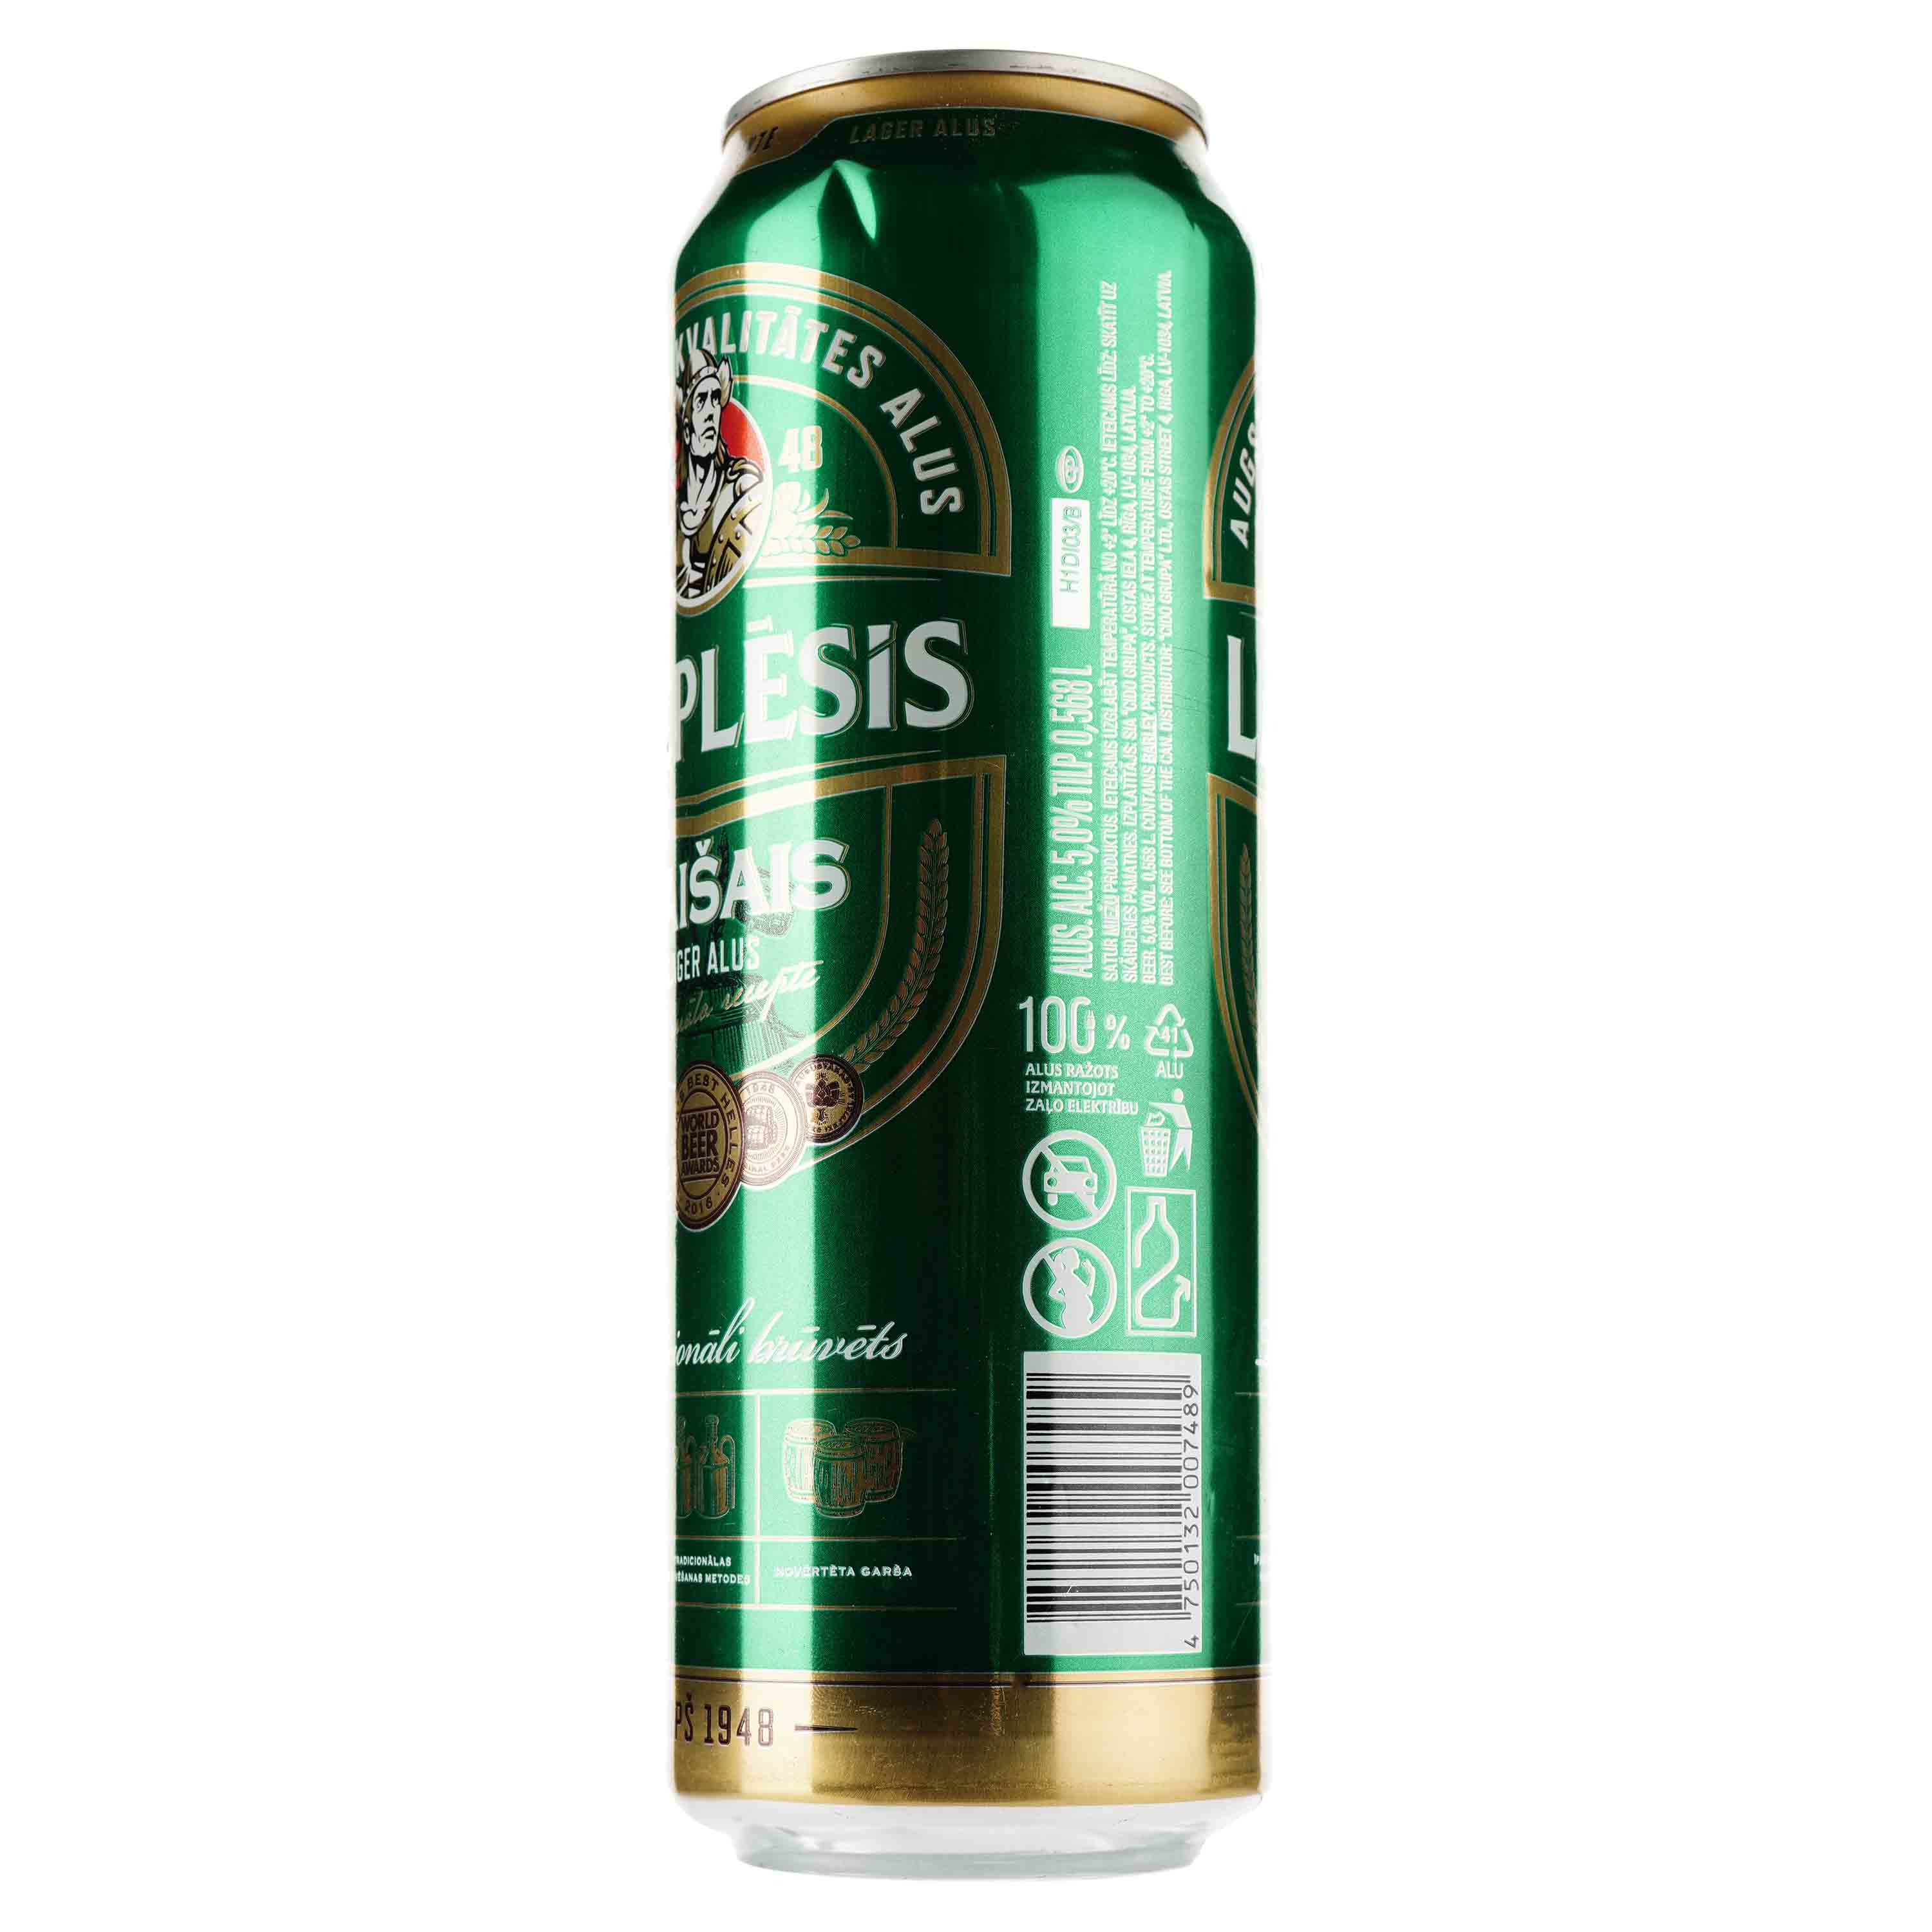 Пиво Lacplesis Gaisais светлое, 5%, ж/б, 0.568 л - фото 2